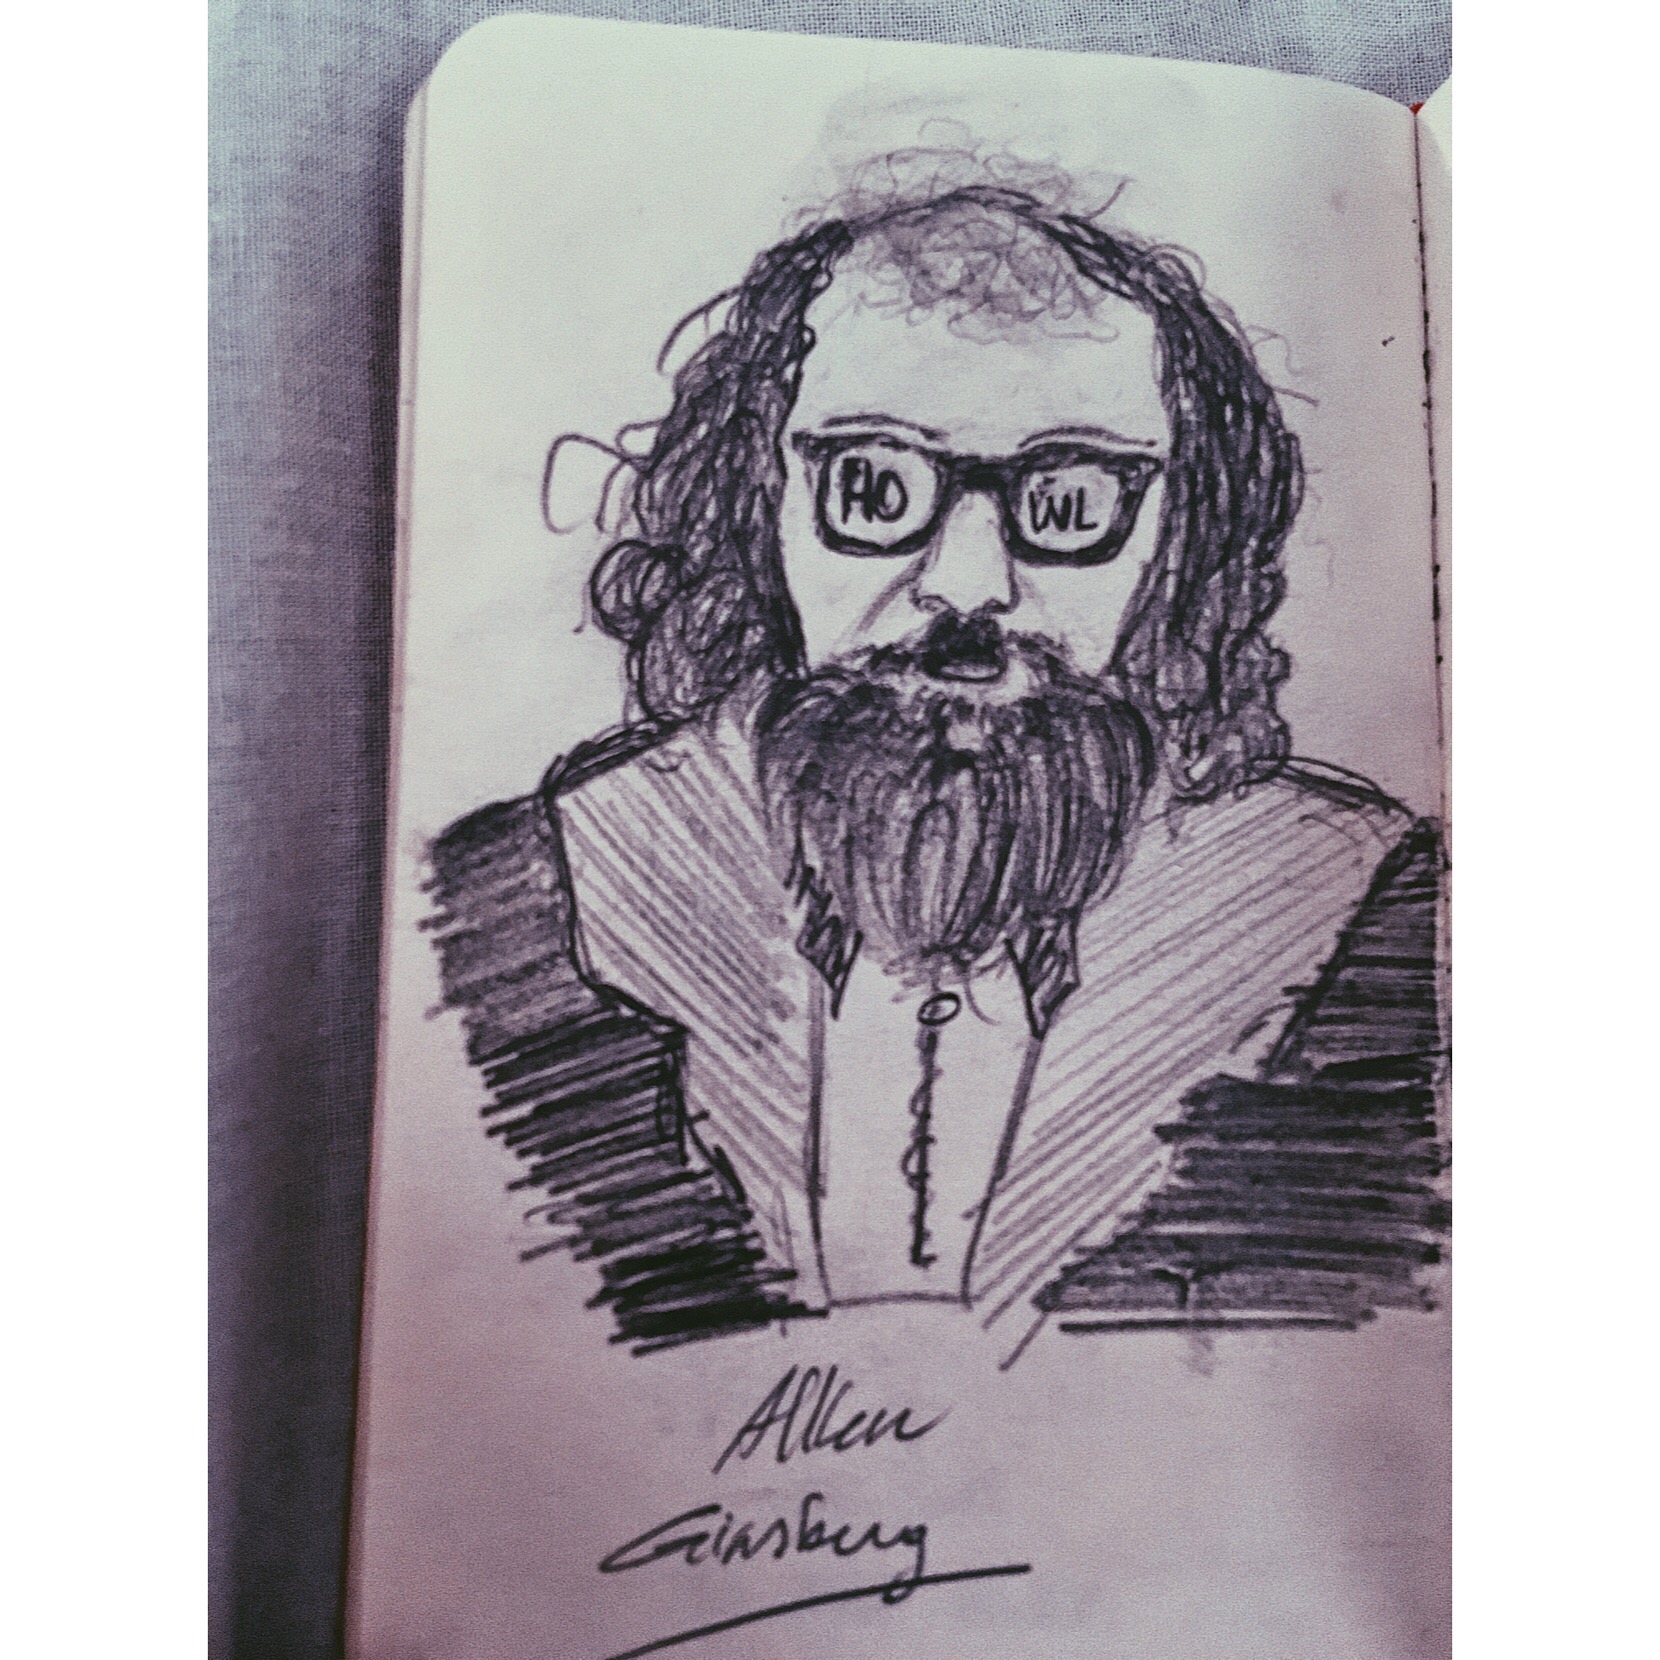 Allen Ginsberg ) sketch portrait